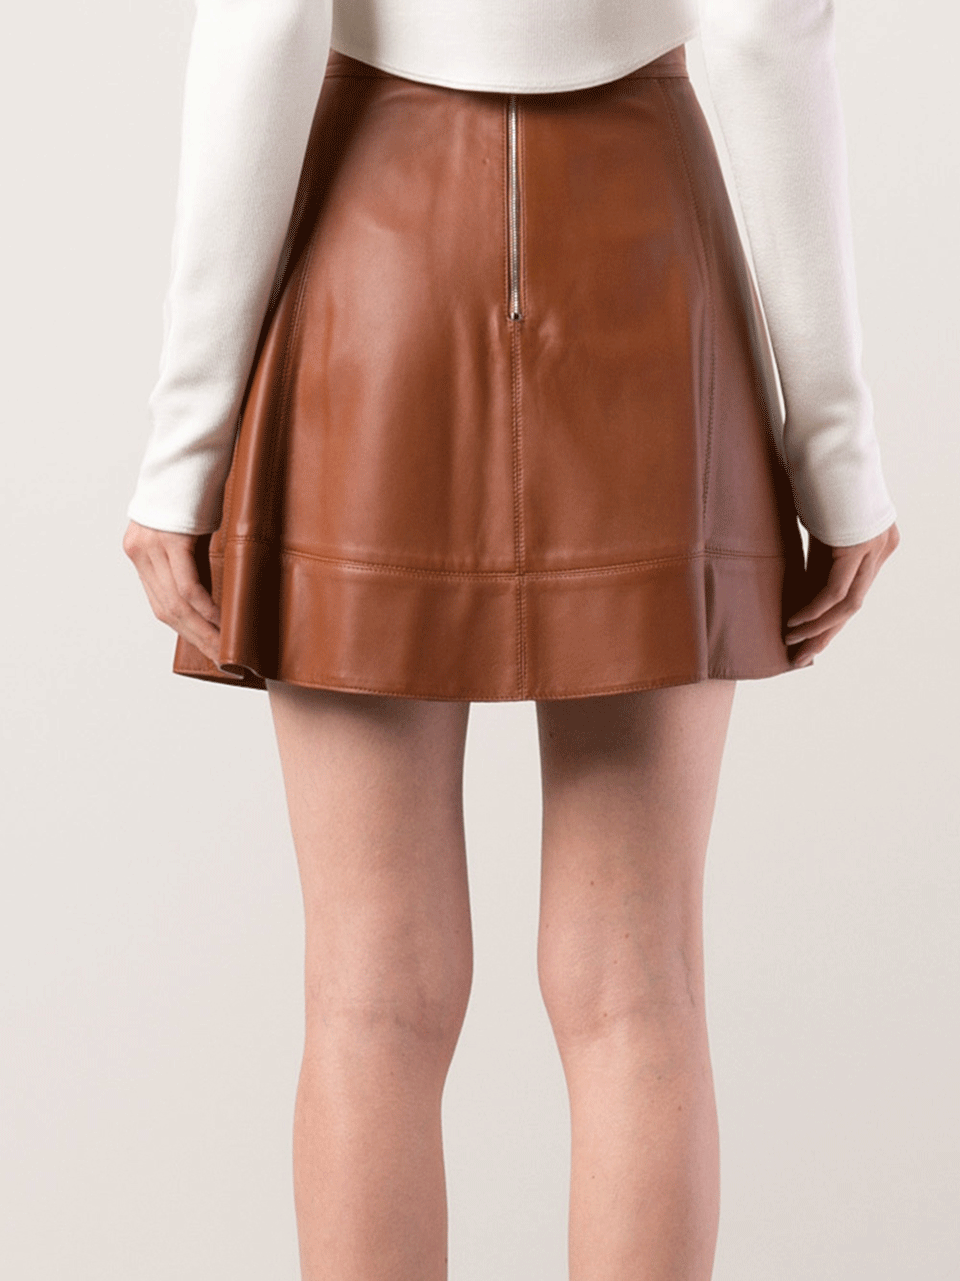 MICHAEL KORS-Leather Flirt Skirt-